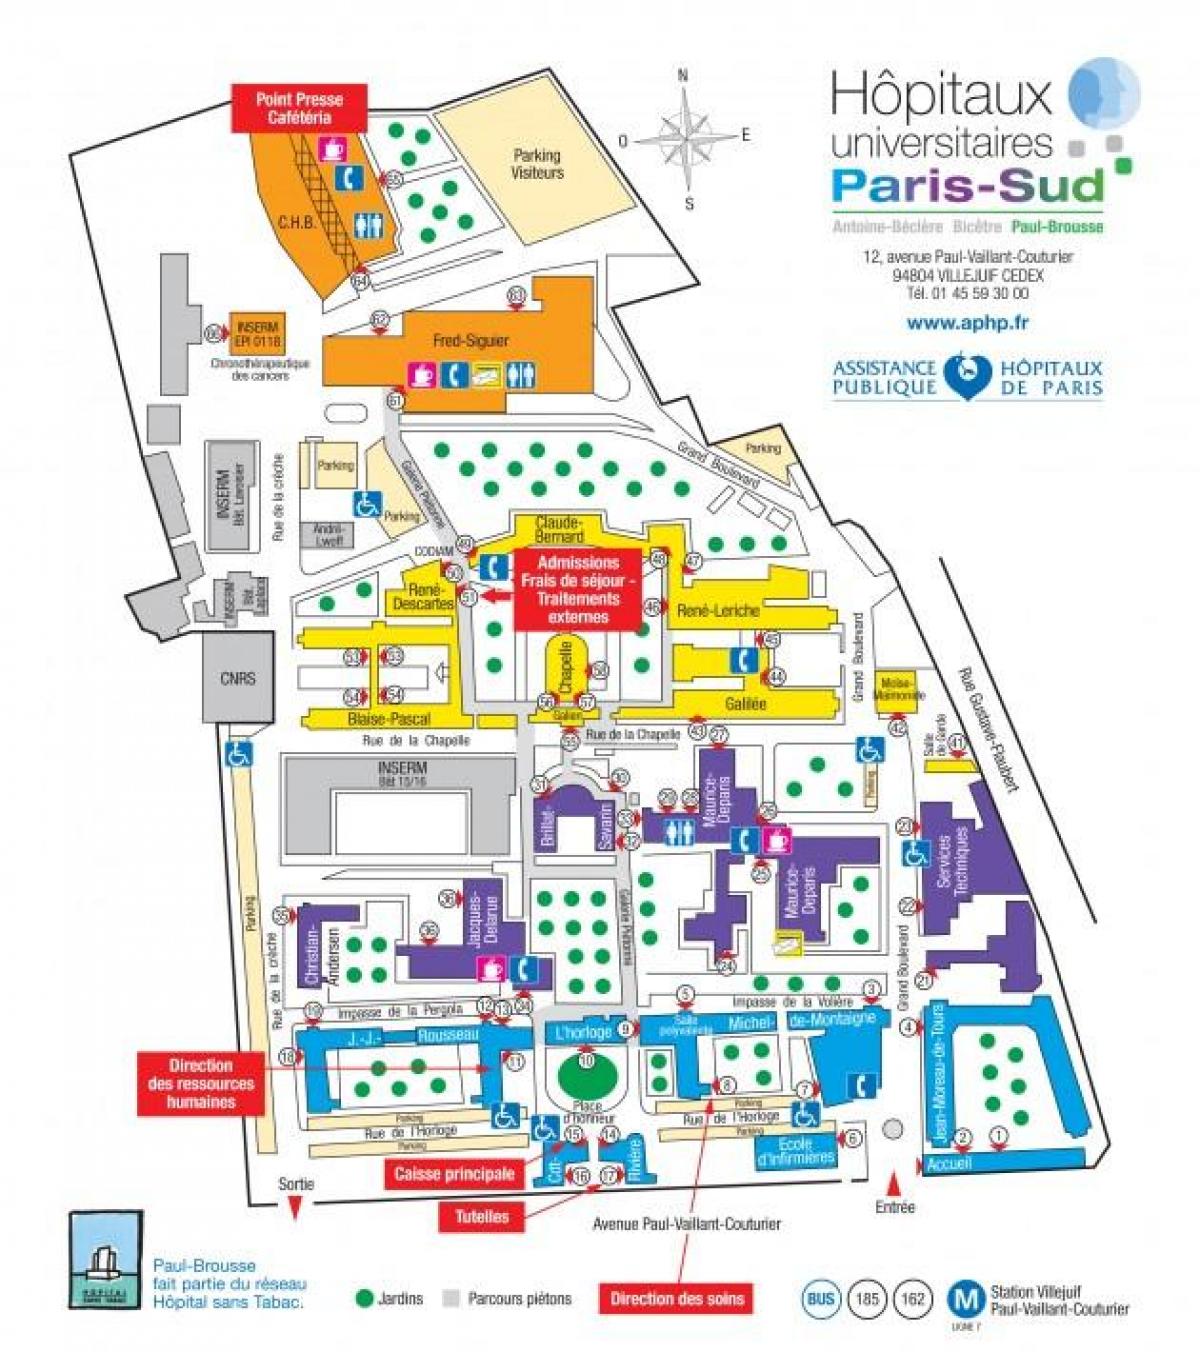 რუკა პოლ-Brousse საავადმყოფოს